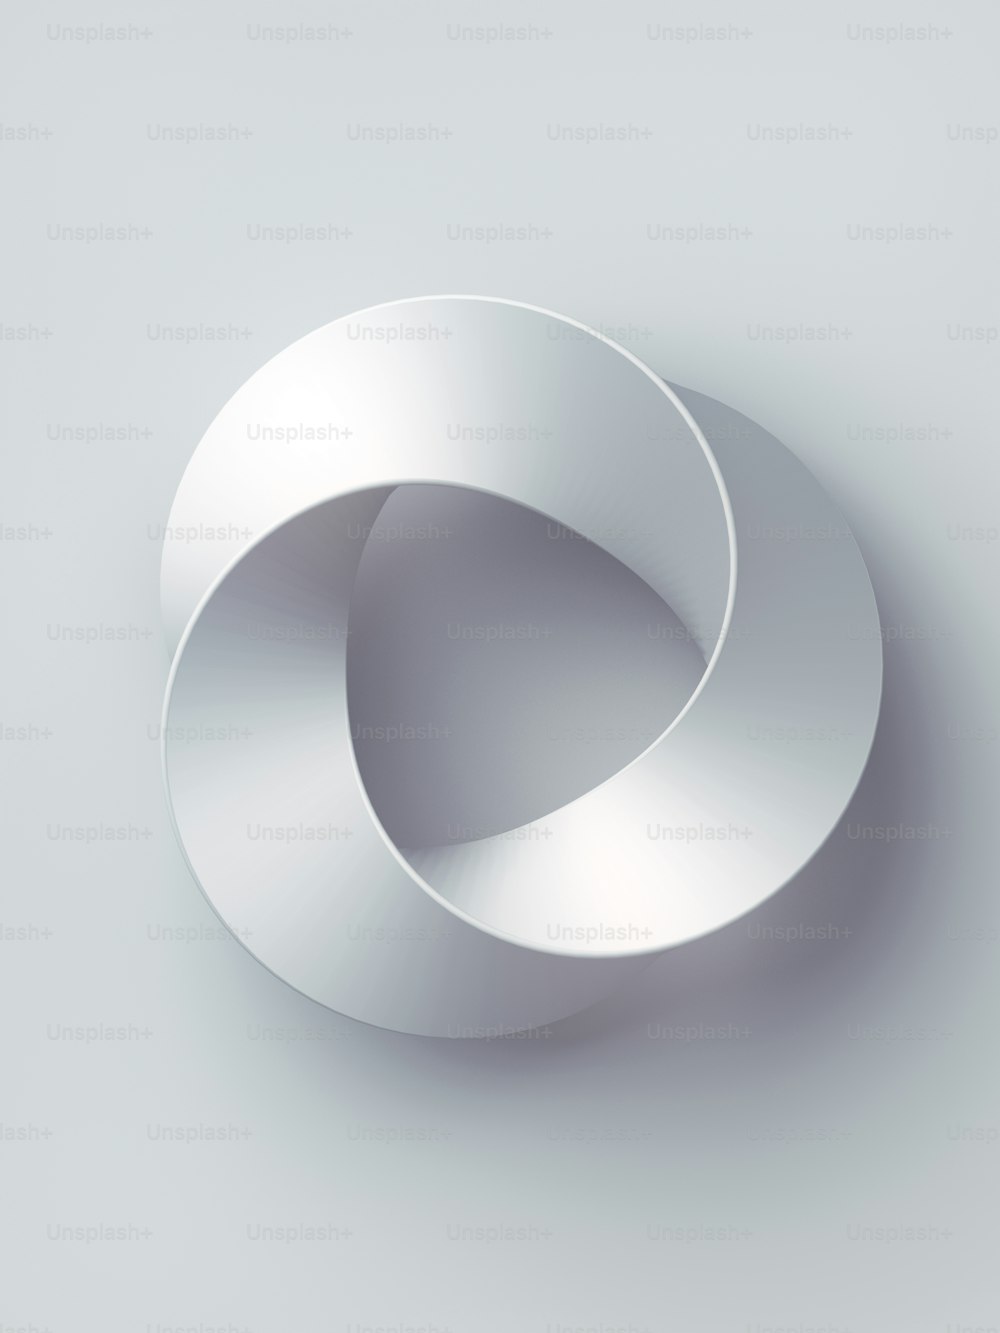 Geometria sagrada do anel de tira de Mobius. Figura espacial com superfícies viradas para cima. Design de capa de renderização 3D em fundo branco. Arte minimalista, ilustração digital abstrata